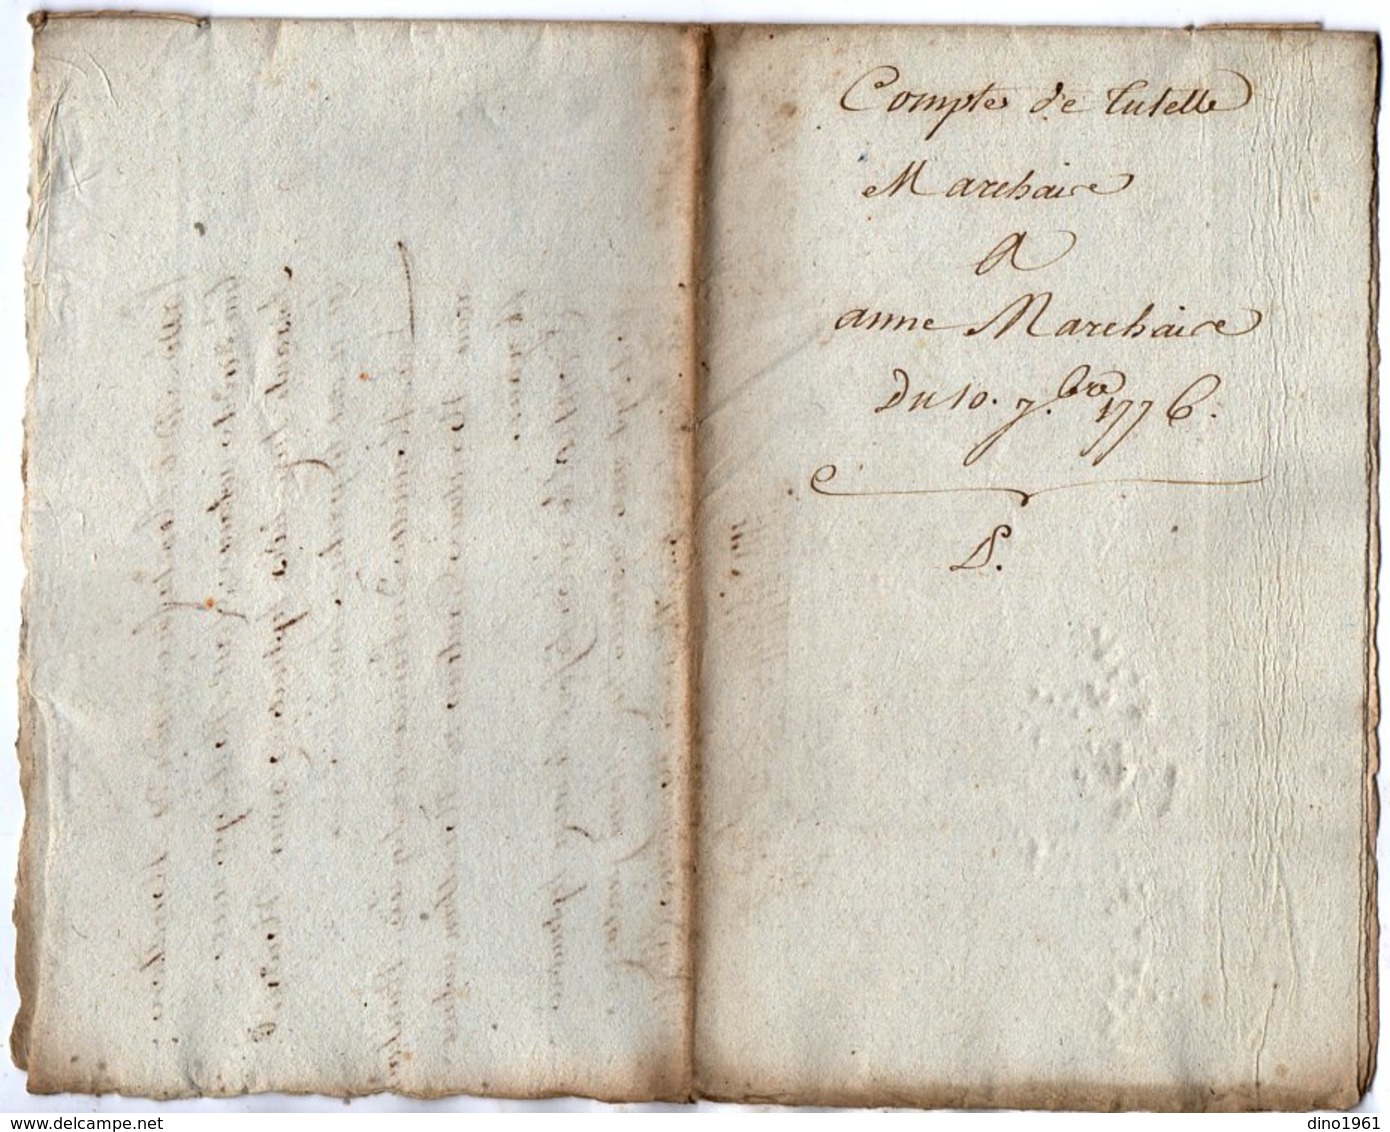 VP13.313 - Cachet Généralité De LA ROCHELLE - Acte De 1776 - Comptes De Tutelle Sr MARCHAIS à ROCHEFORT - Seals Of Generality